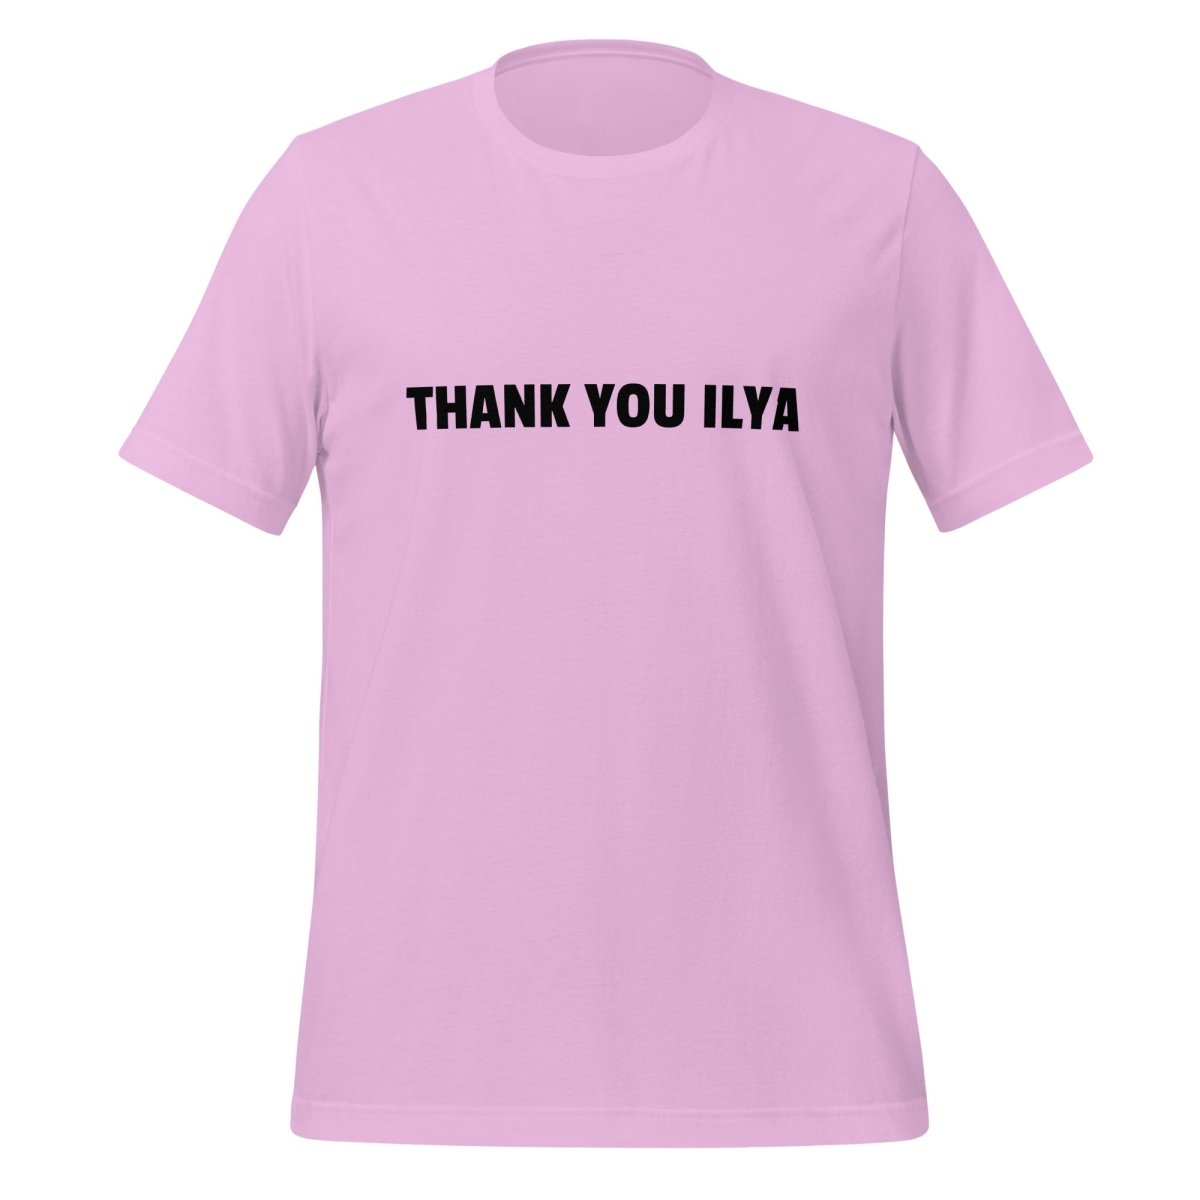 THANK YOU ILYA T - Shirt (unisex) - Lilac - AI Store